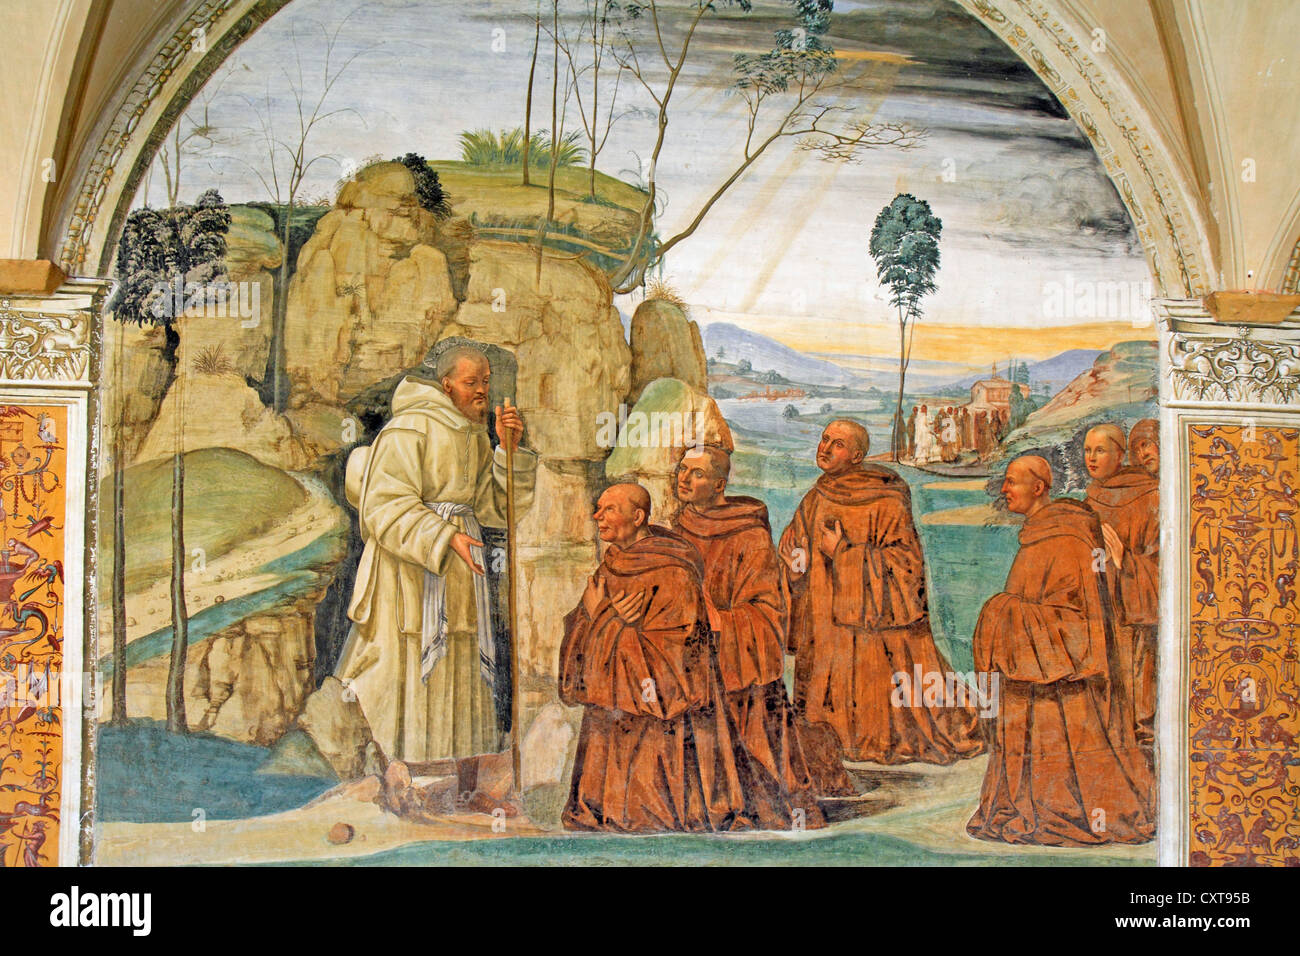 Affresco della vita di san Benedetto, affresco del Sodoma, immagine 9, Benedetto accetta le richieste degli eremiti di diventare loro abate, Foto Stock